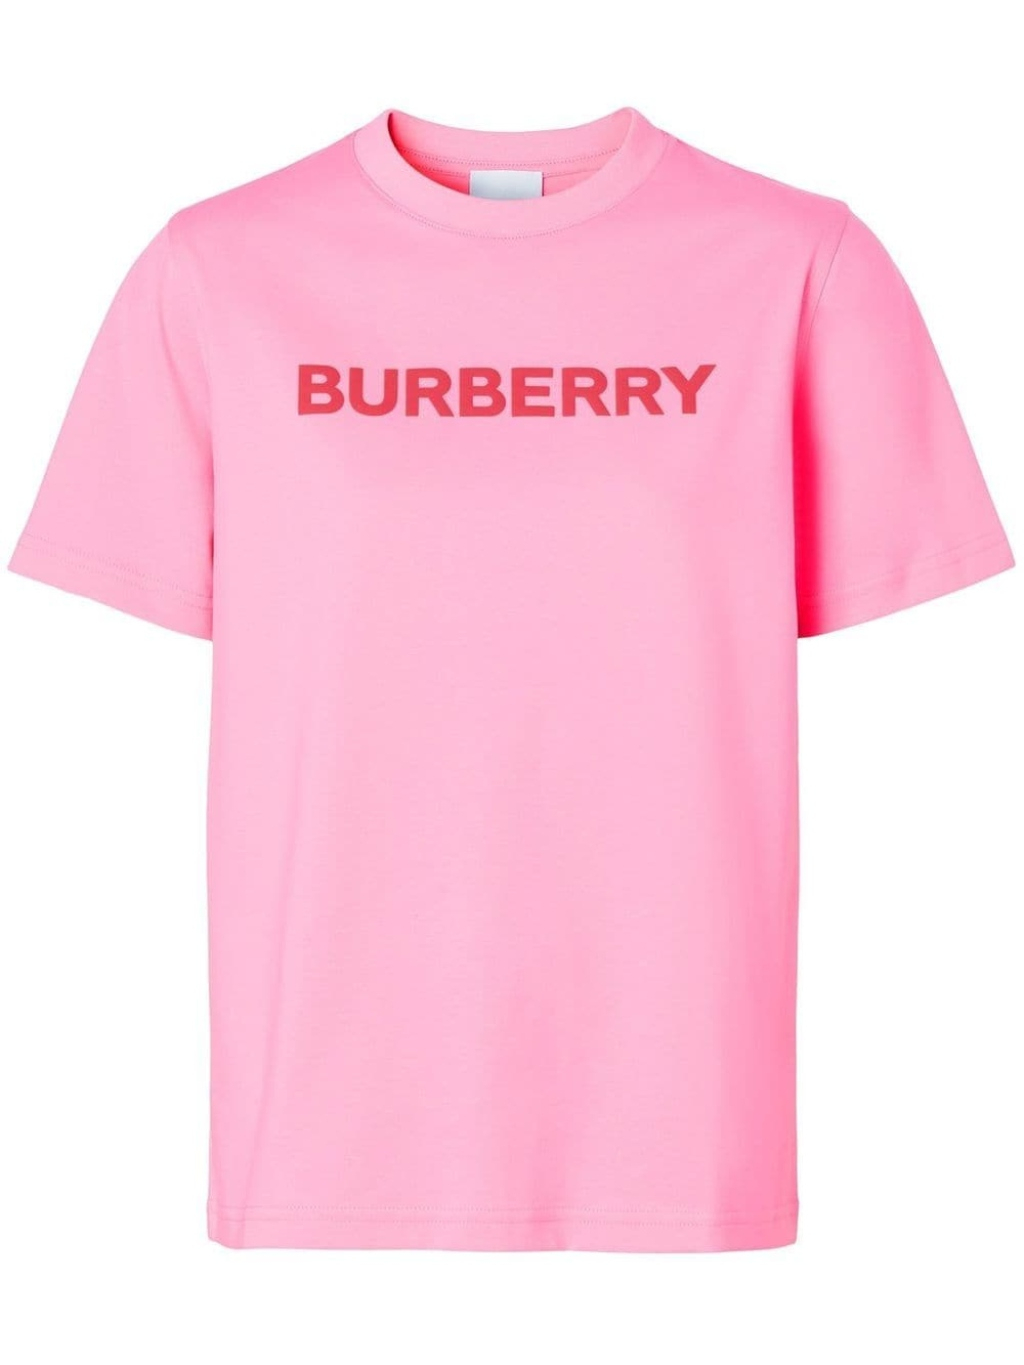 BURBERRY Bubblegum Pink tričko | 10k.cz